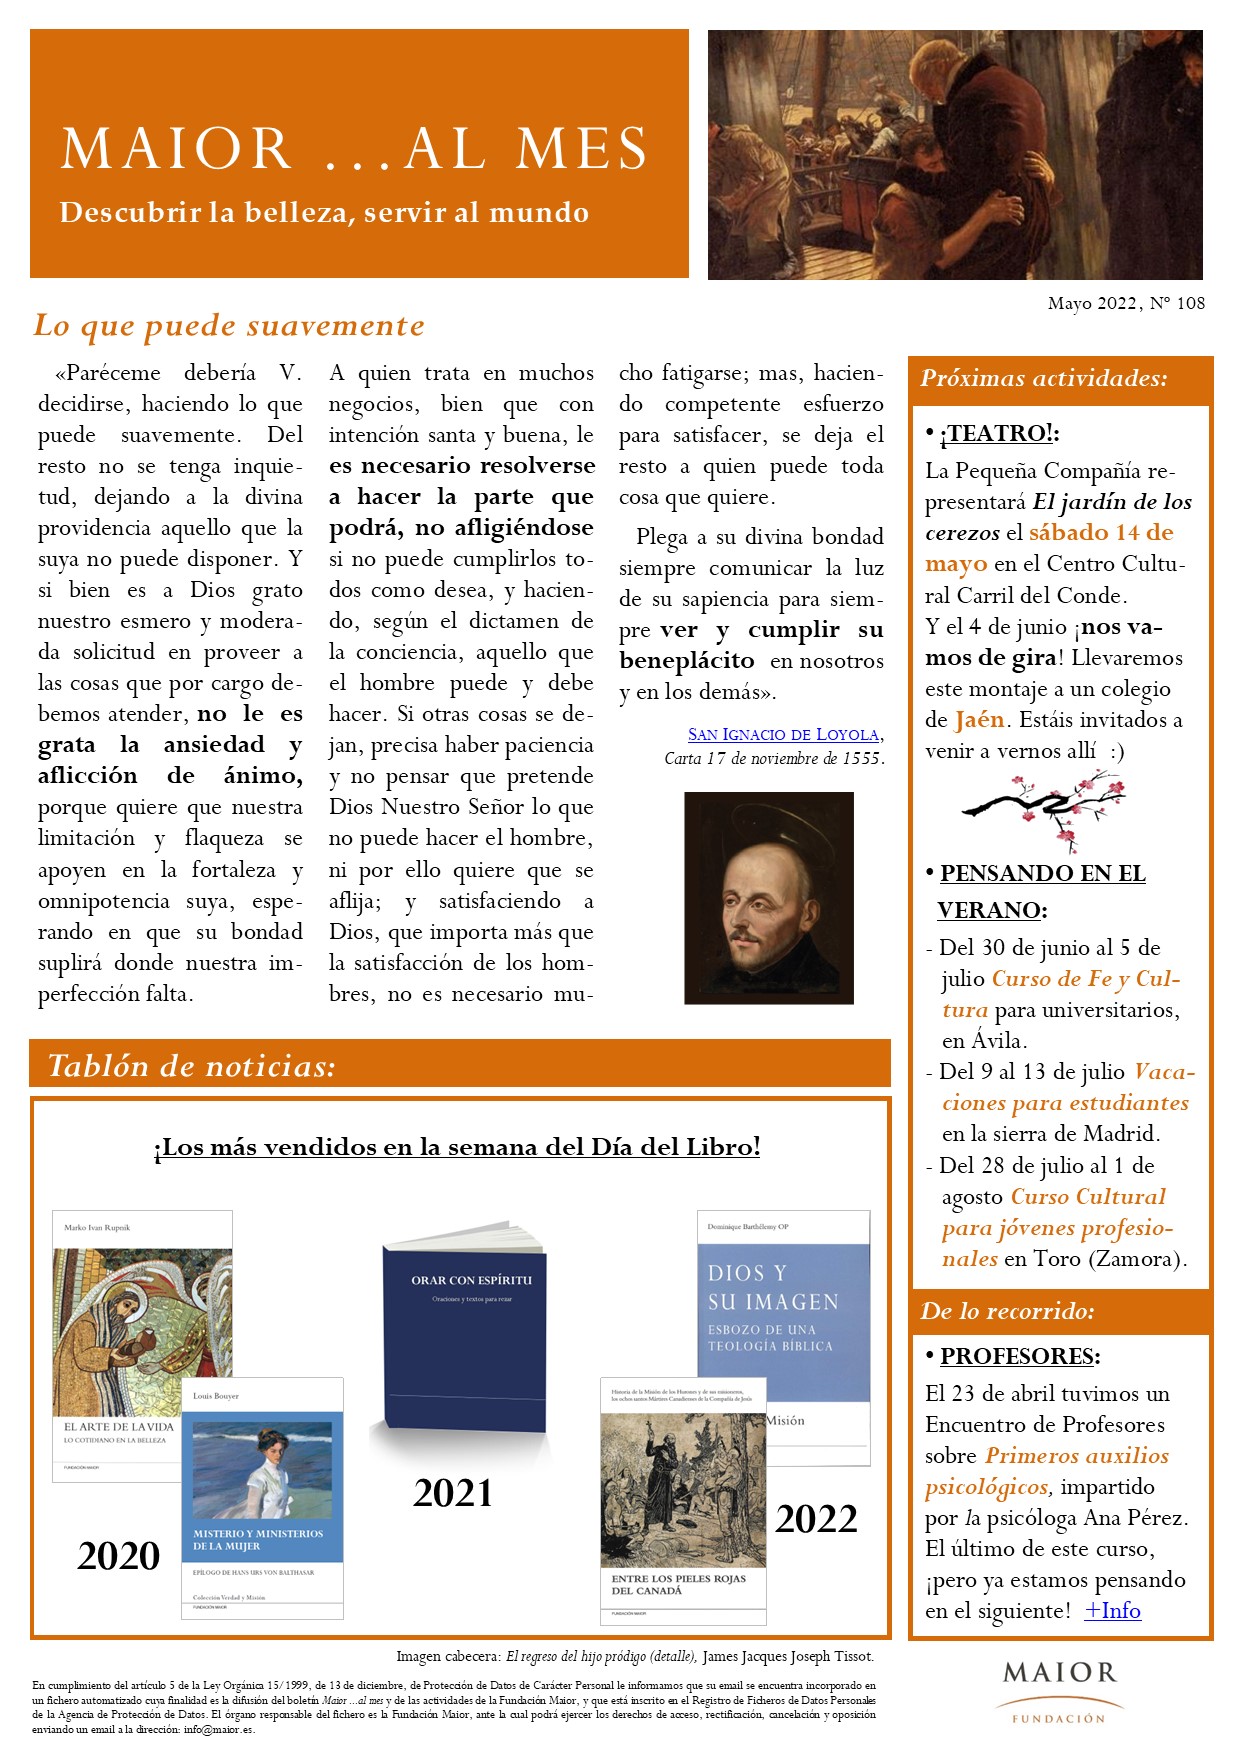 Boletín mensual de noticias y actividades de la Fundación Maior. Edición de mayo 2022